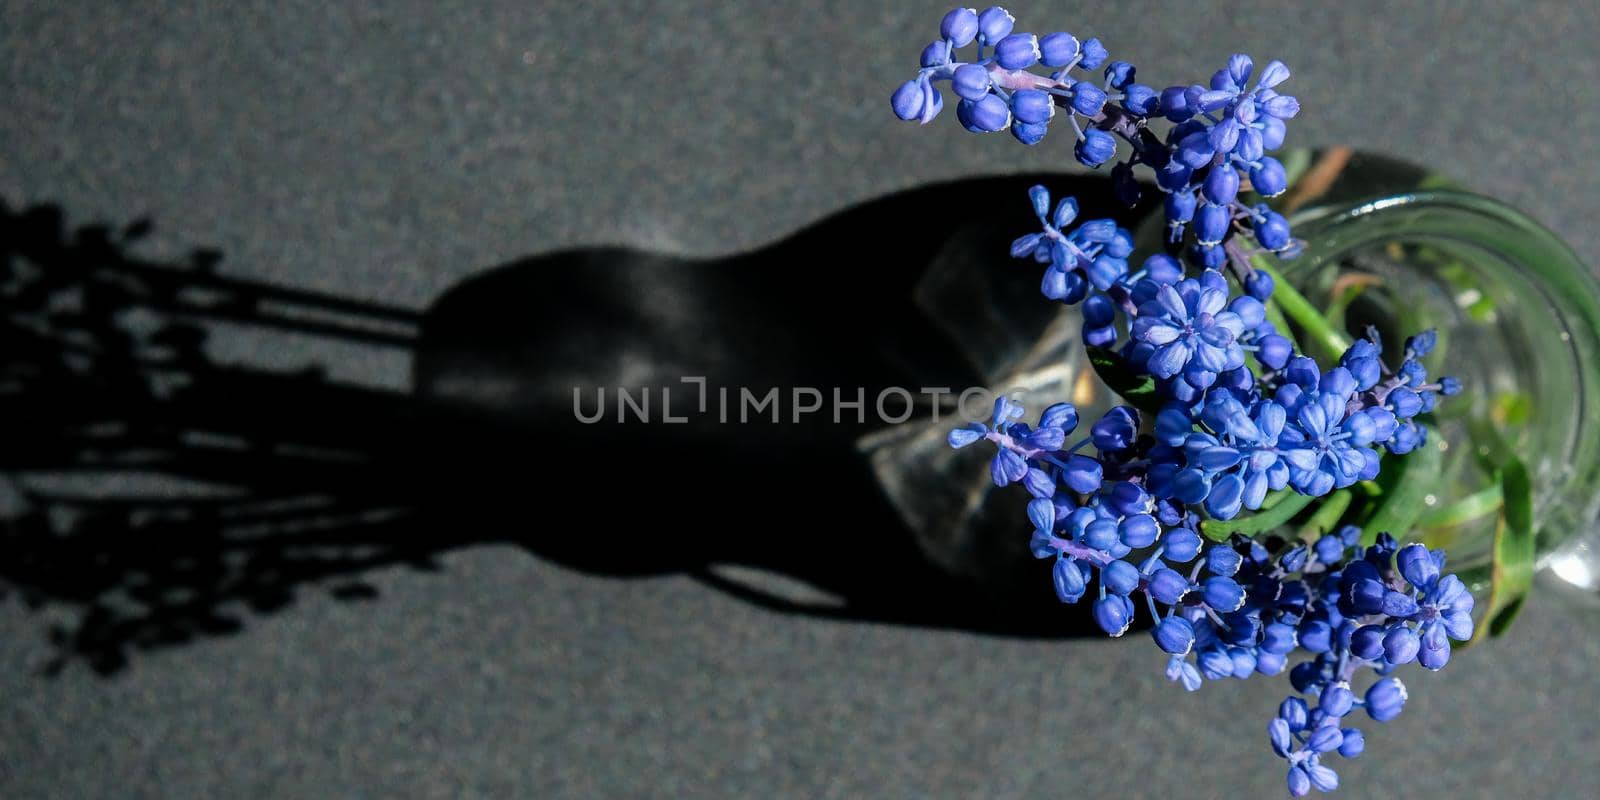 Bouquet of blue Muscari. Black background. Spring bulbous flowers. Flower shop concept. Copy space for text